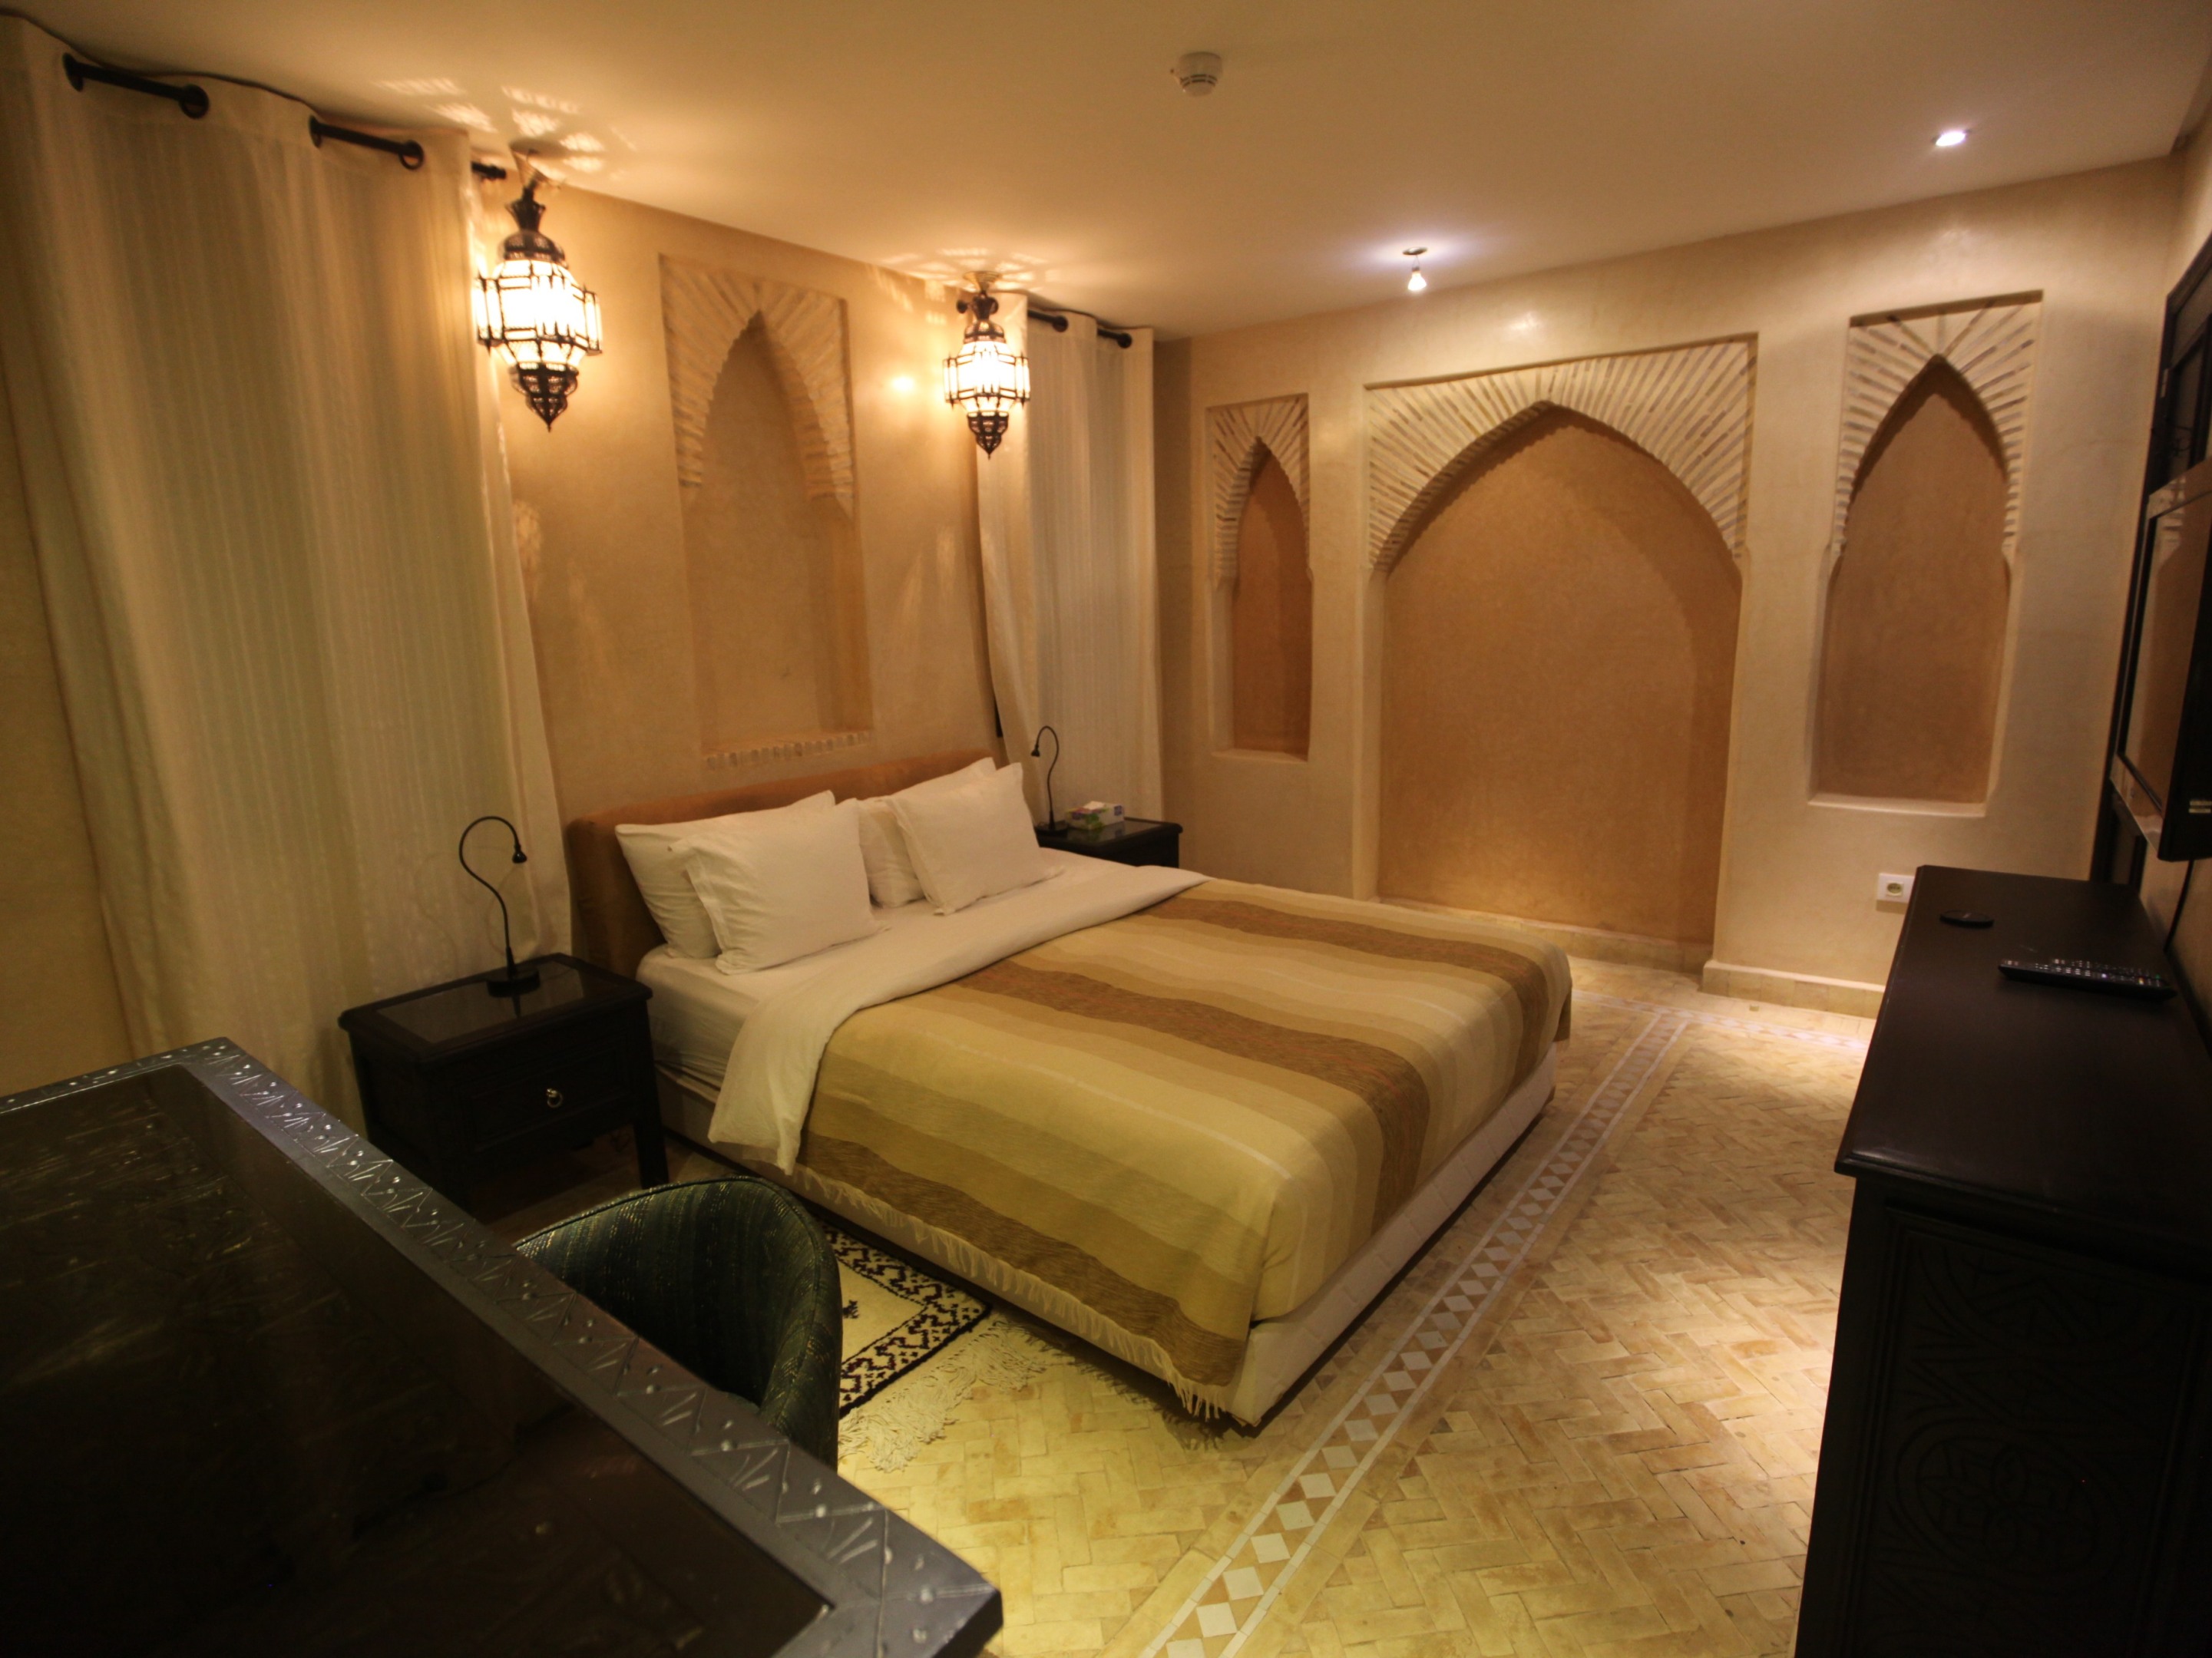 Agadir Luxury Suite